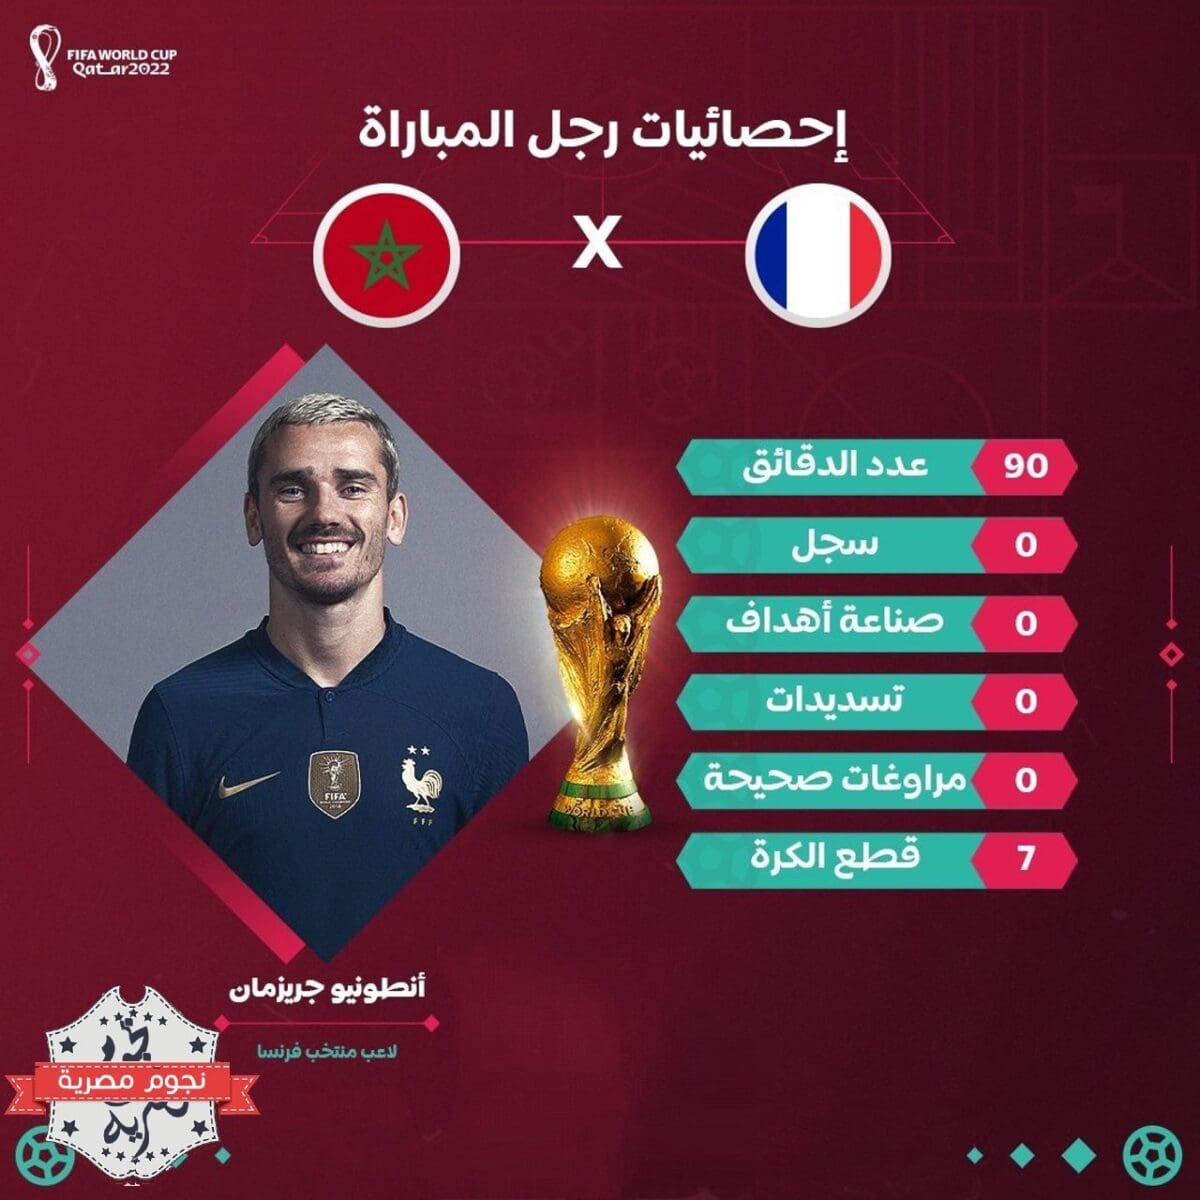 إحصائيات جريزمان في مباراة فرنسا والمغرب بالمونديال القطري 2022